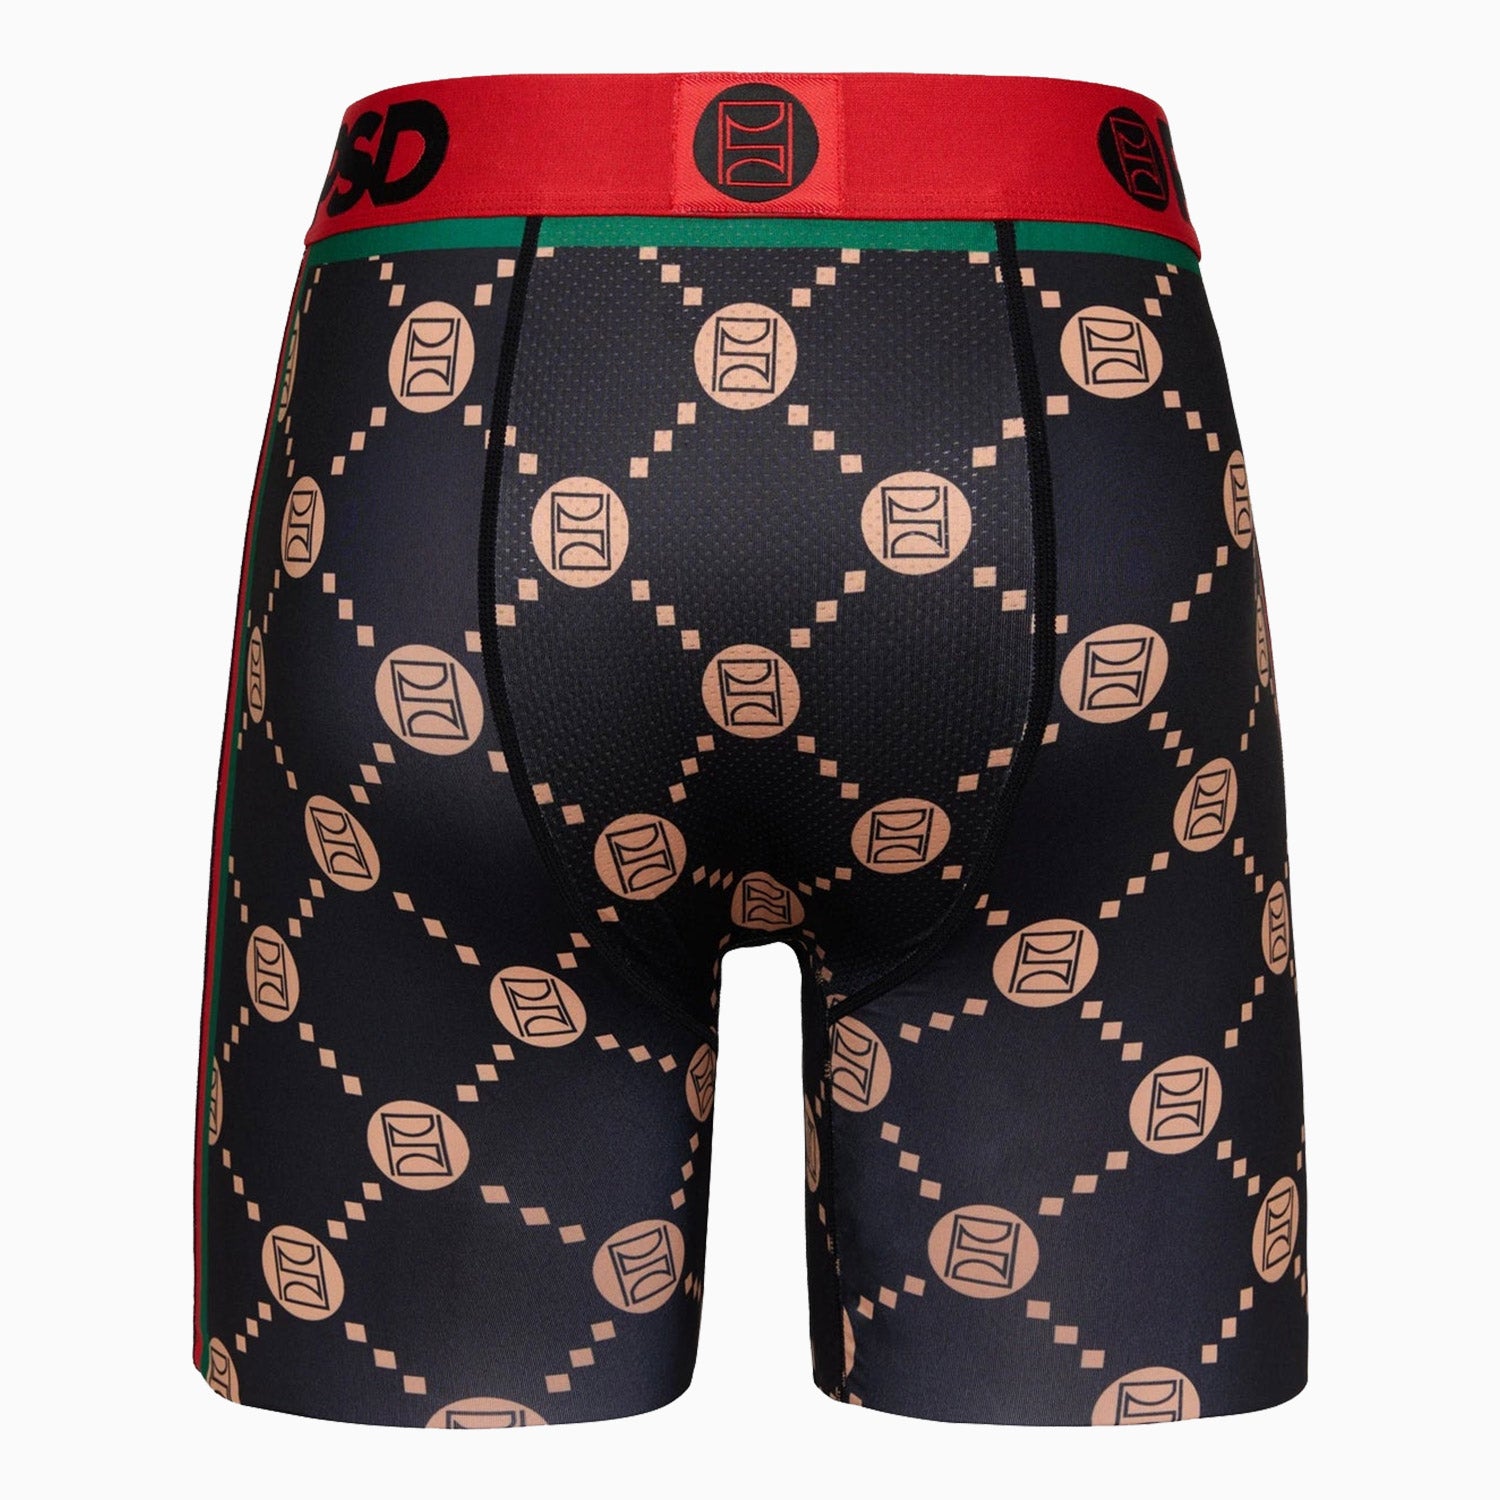 psd-underwear-mens-emblem-luxe-boxer-brief-124180013